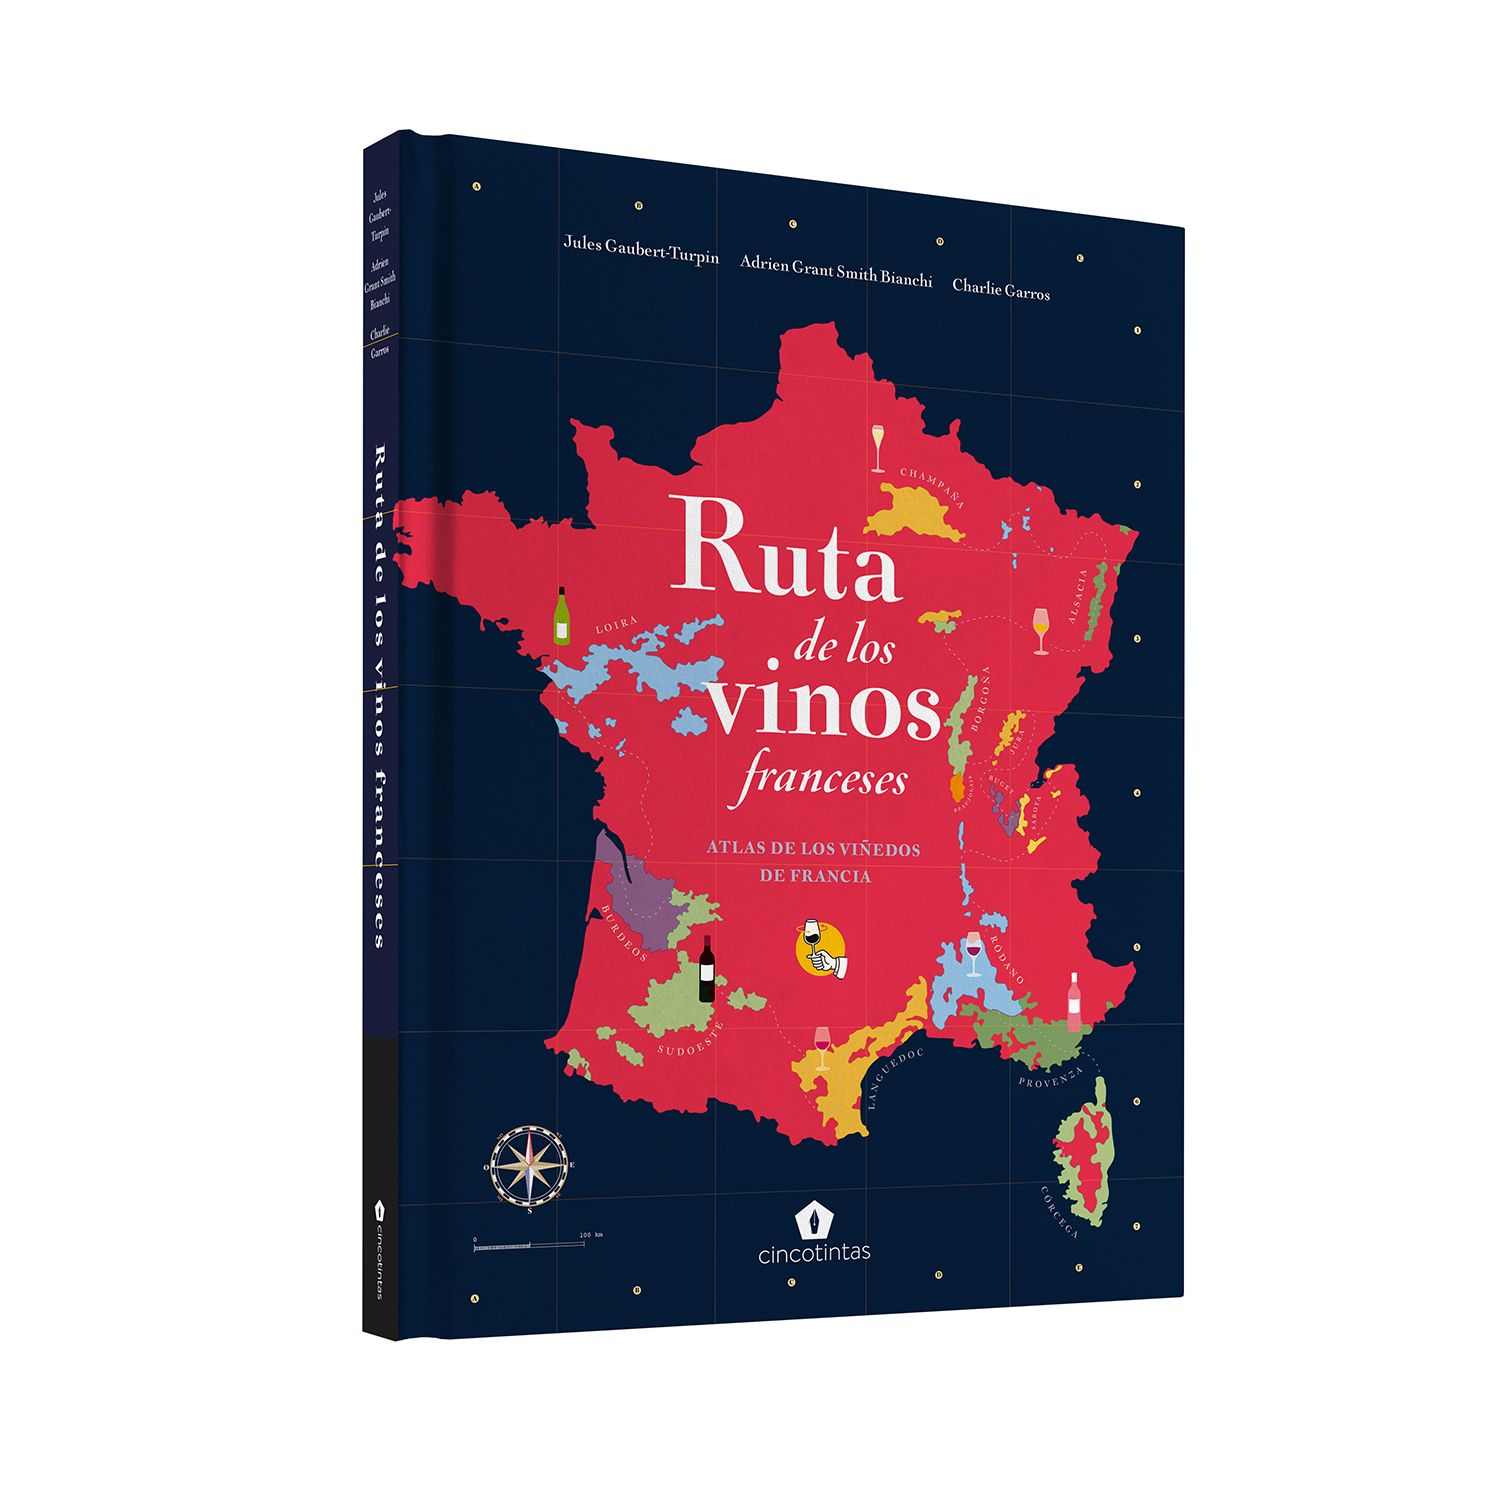 Portada del llibre 'Ruta de los vinos franceses'